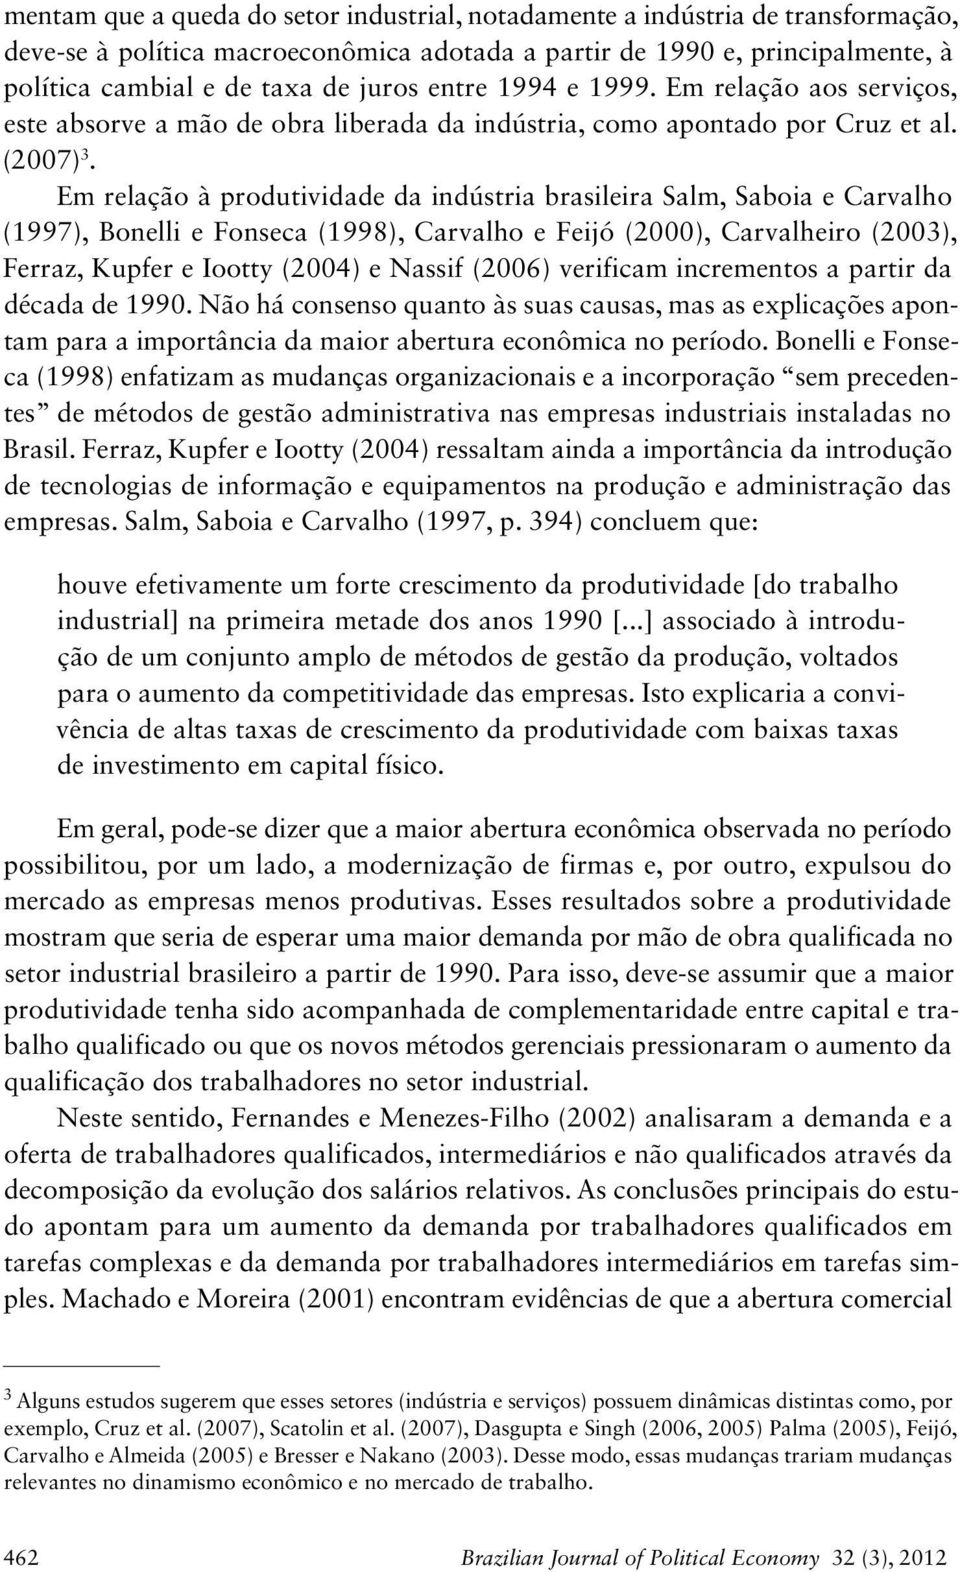 Em relação à produtividade da indústria brasileira Salm, Saboia e Carvalho (99), Bonelli e Fonseca (998), Carvalho e Feijó (), Carvalheiro (), Ferraz, Kupfer e Iootty () e Nassif () verificam